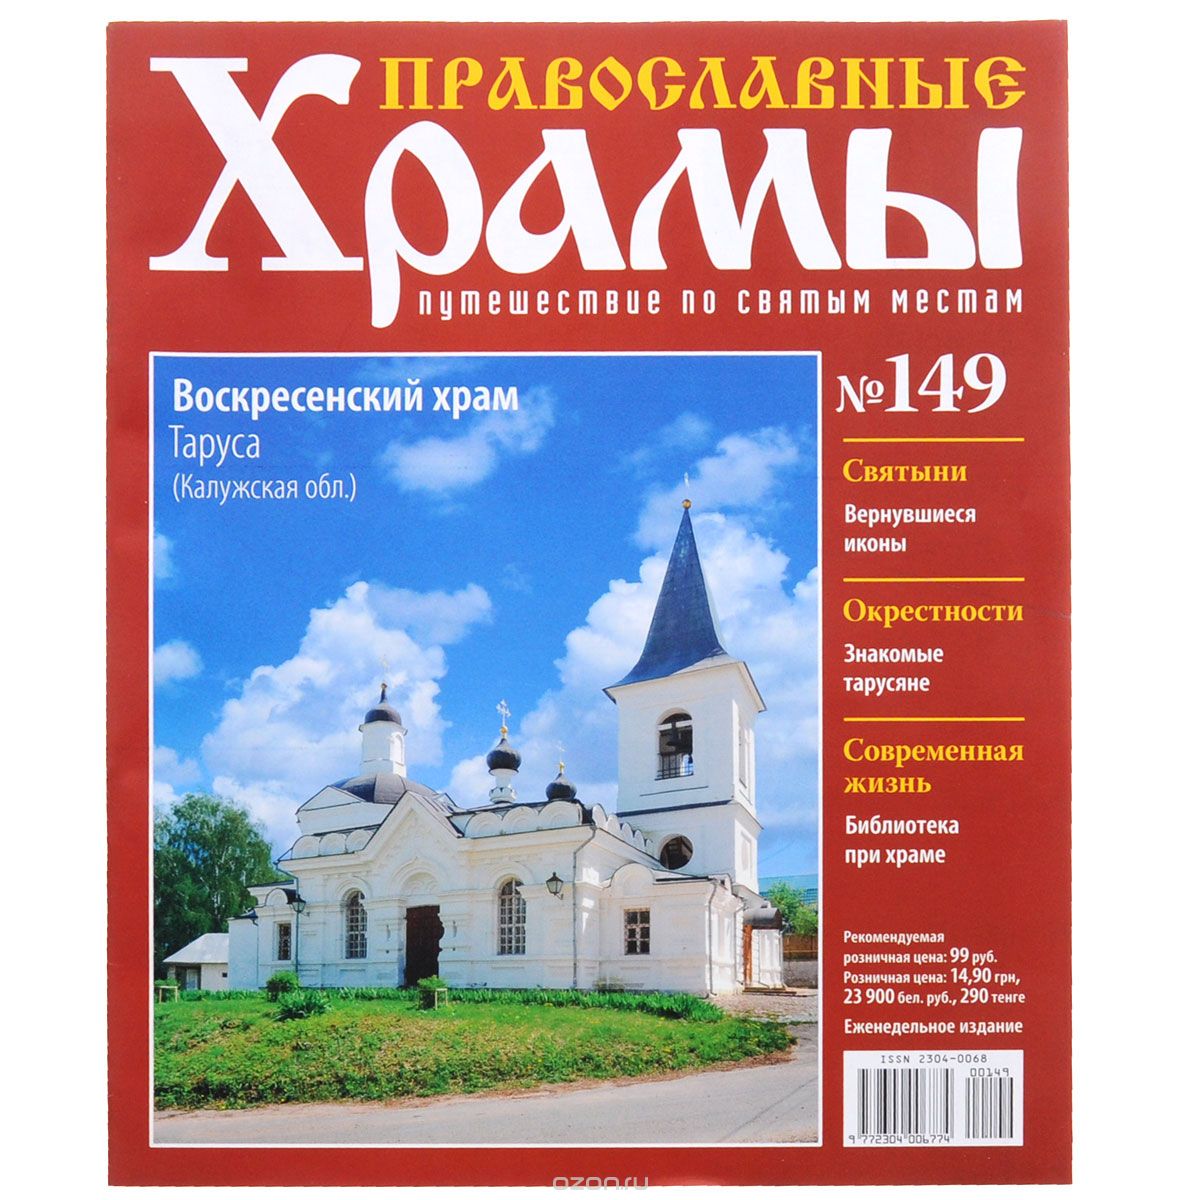 Скачать книгу "Журнал "Православные храмы. Путешествие по святым местам" № 149"